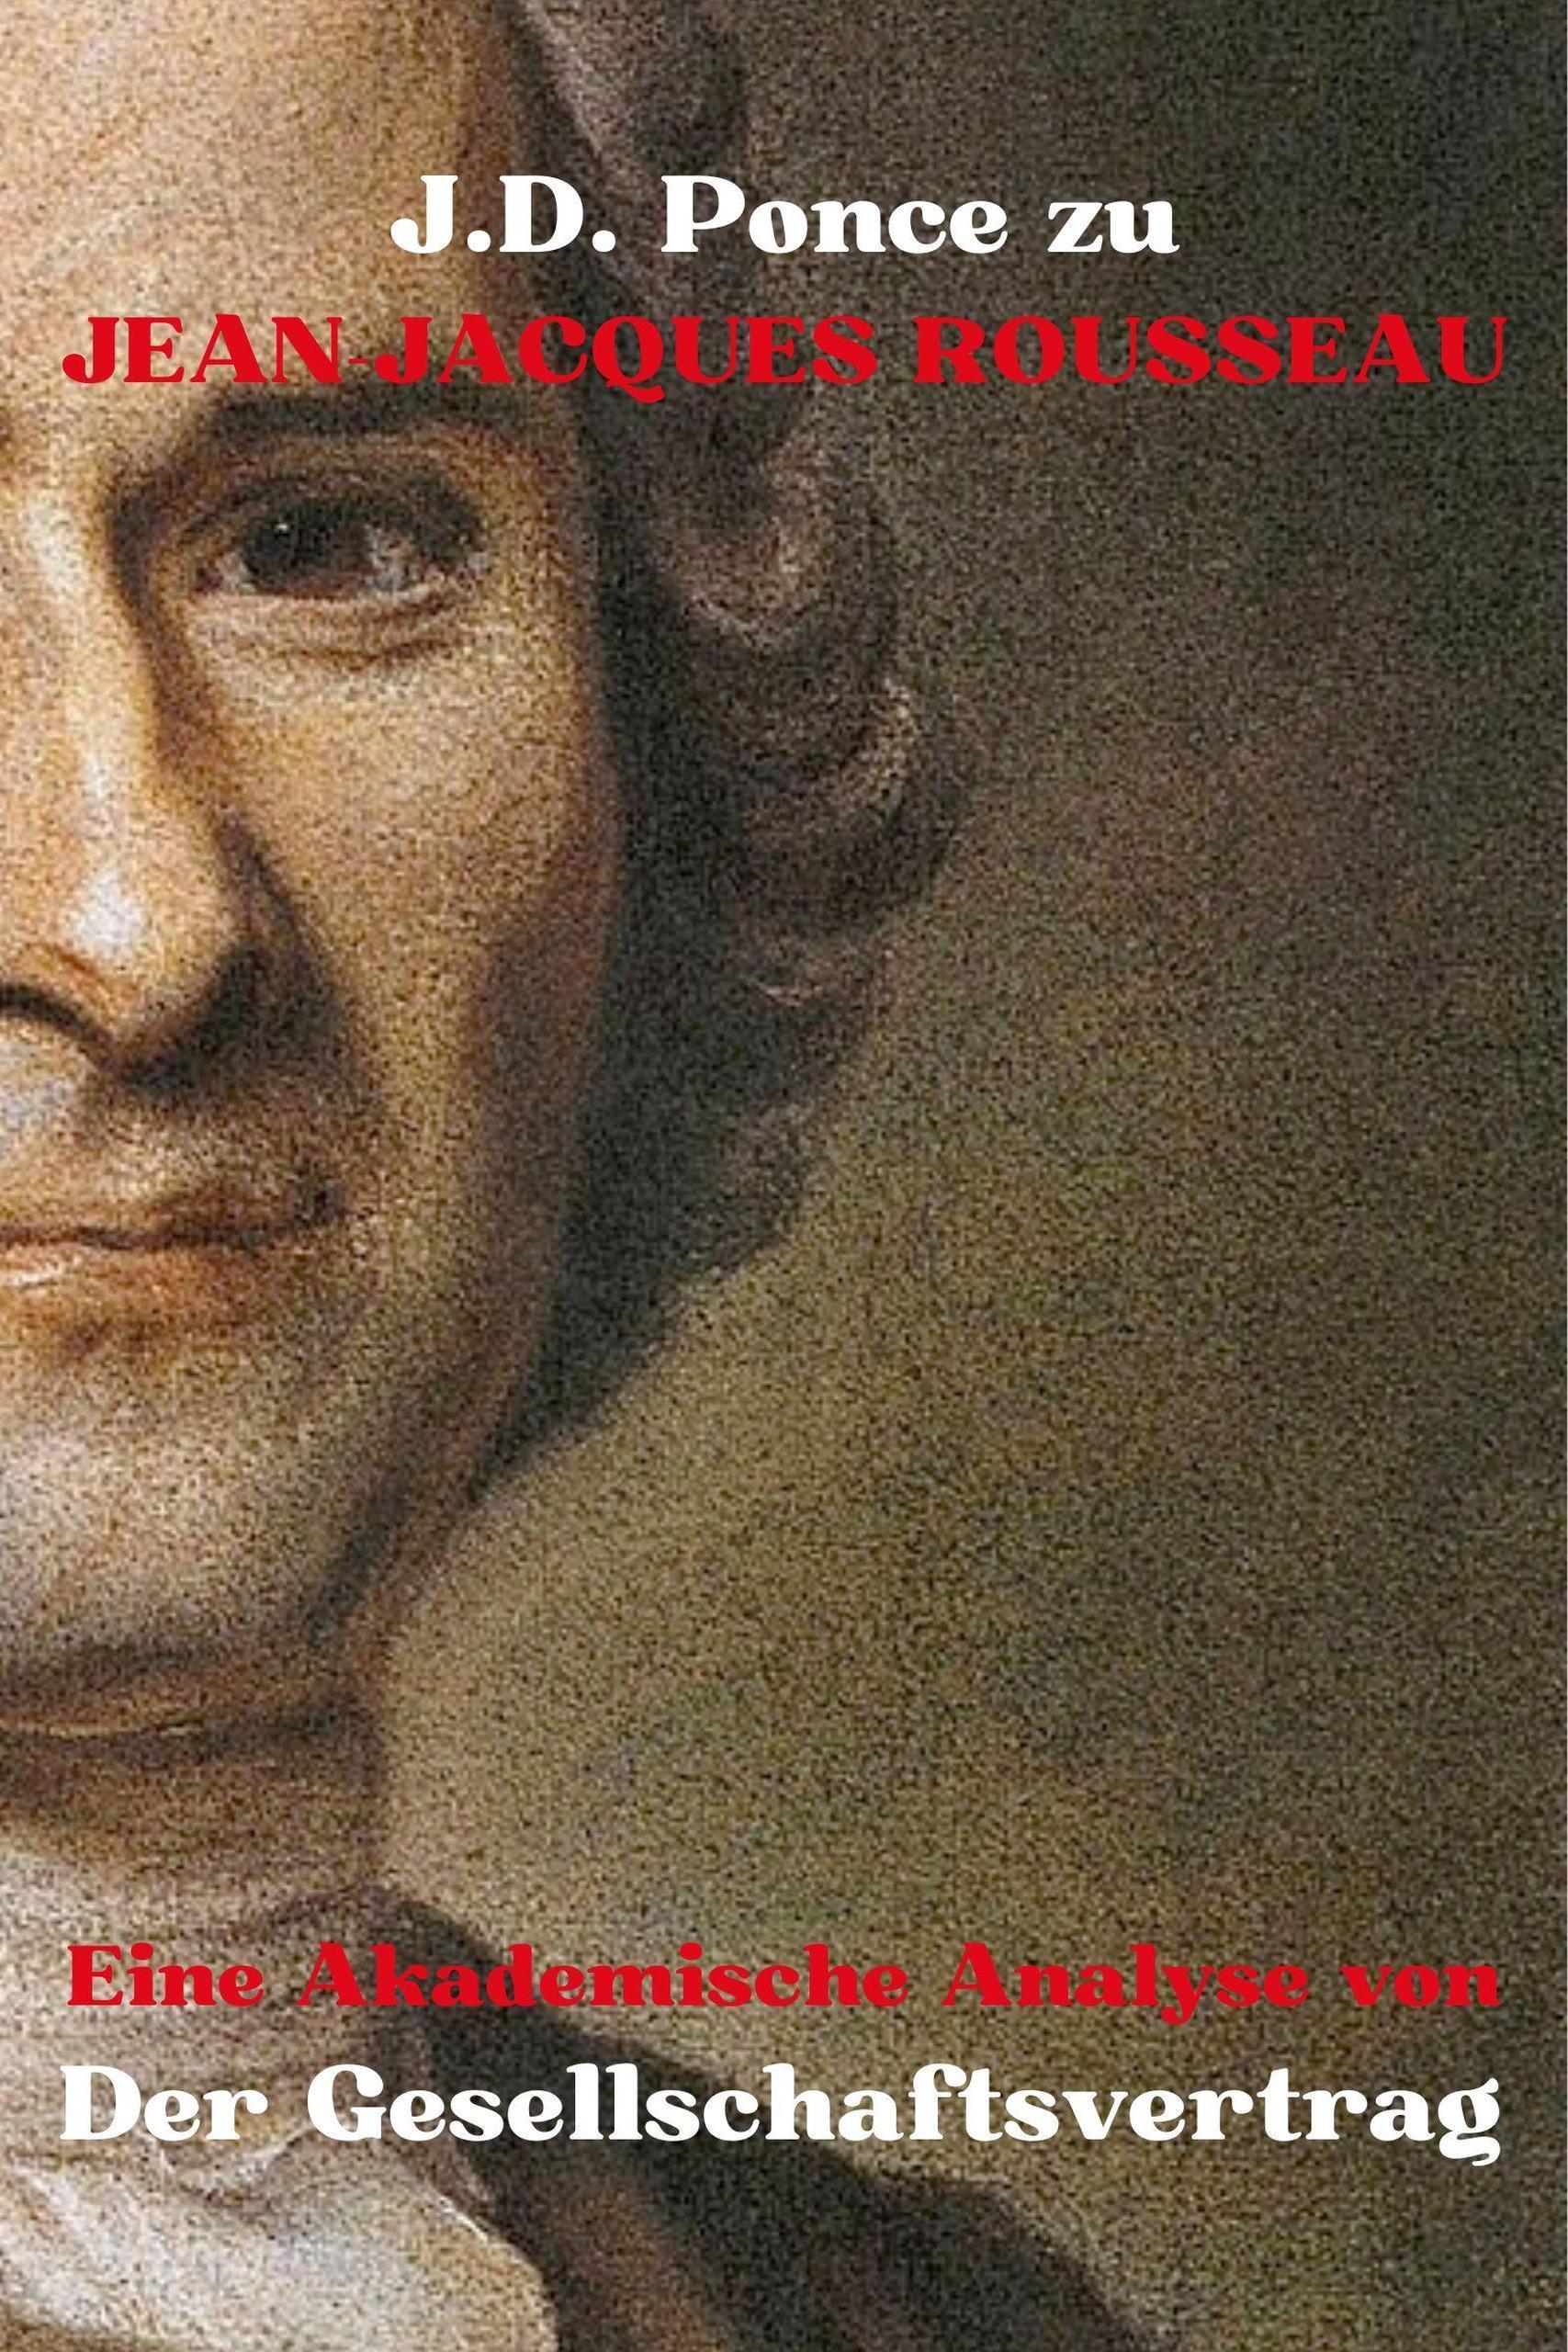 J.D. Ponce zu Jean-Jacques Rousseau: Eine Akademische Analyse von Der Gesellschaftsvertrag (Aufklärung, #1) / Aufklärung